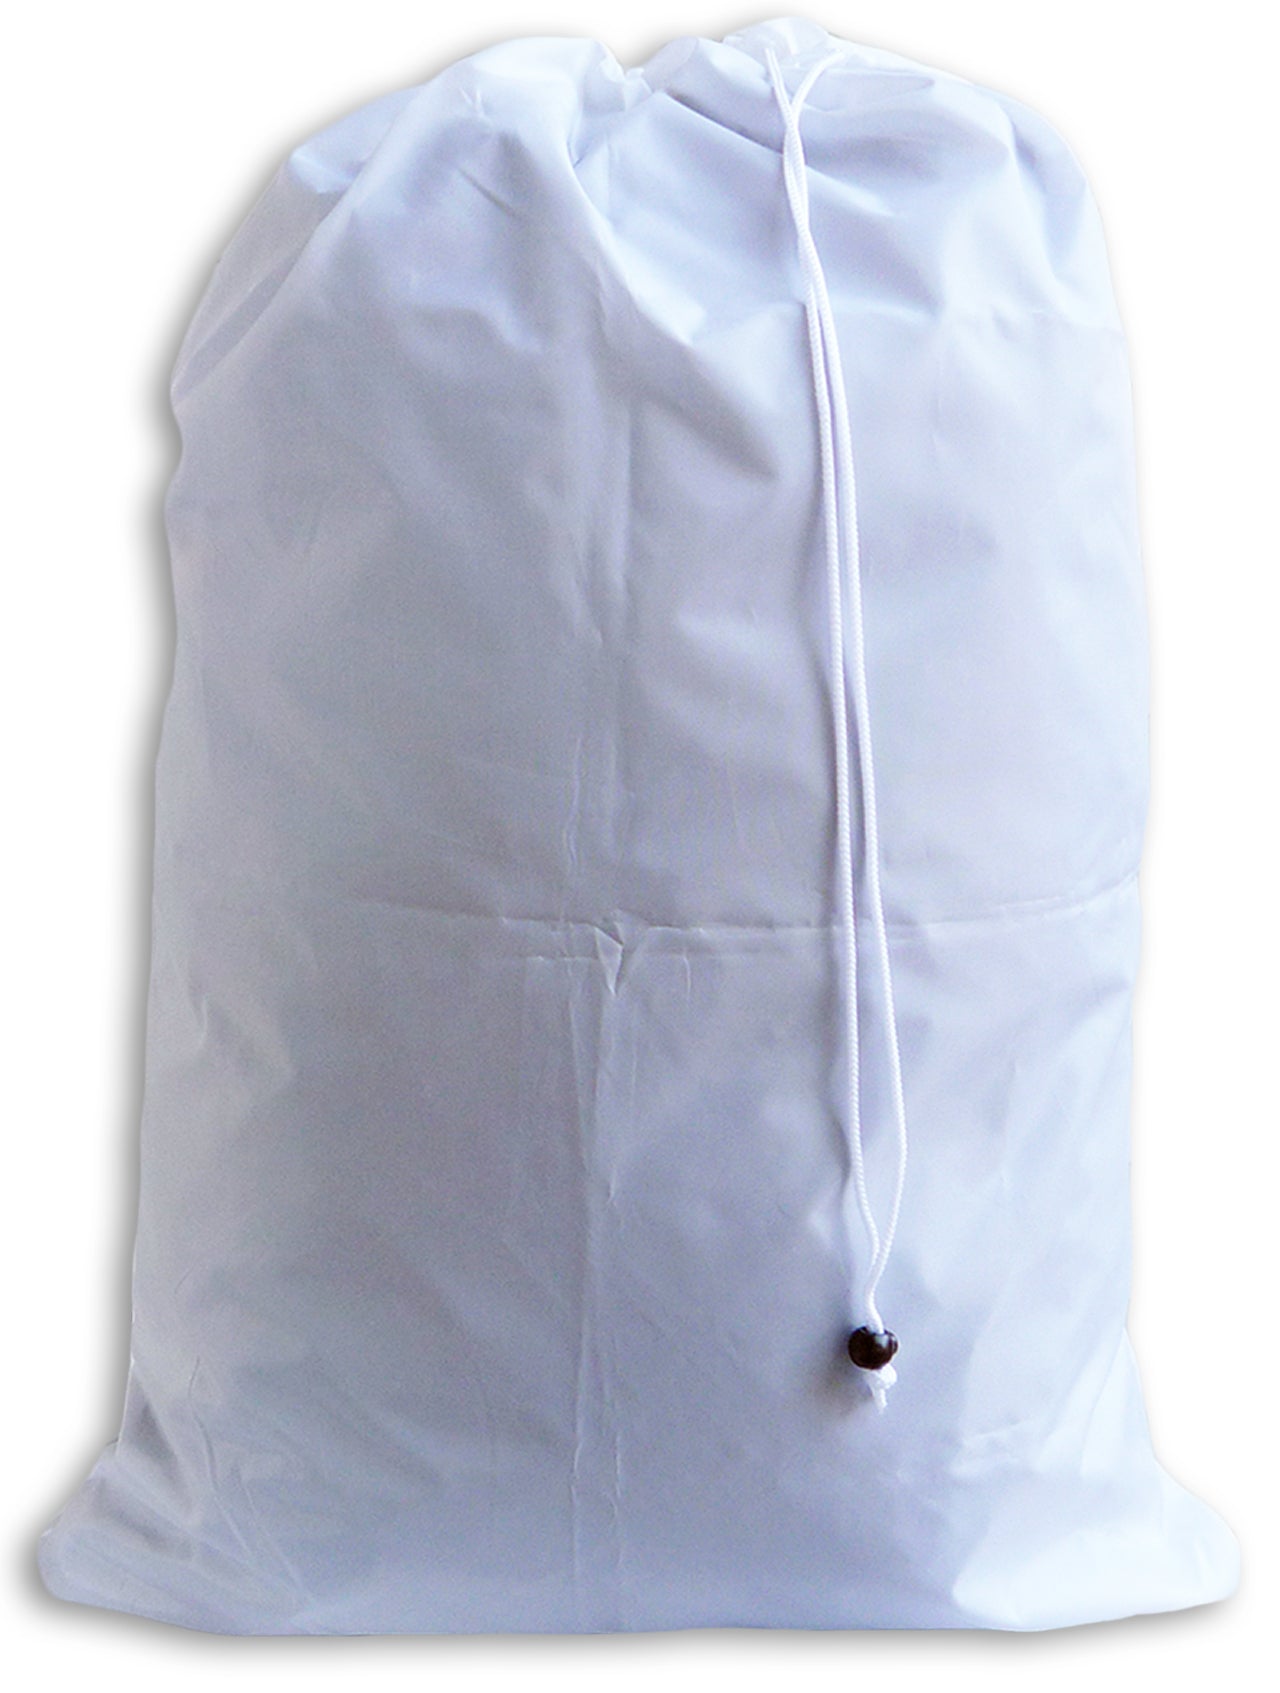 Large Laundry Bag, White